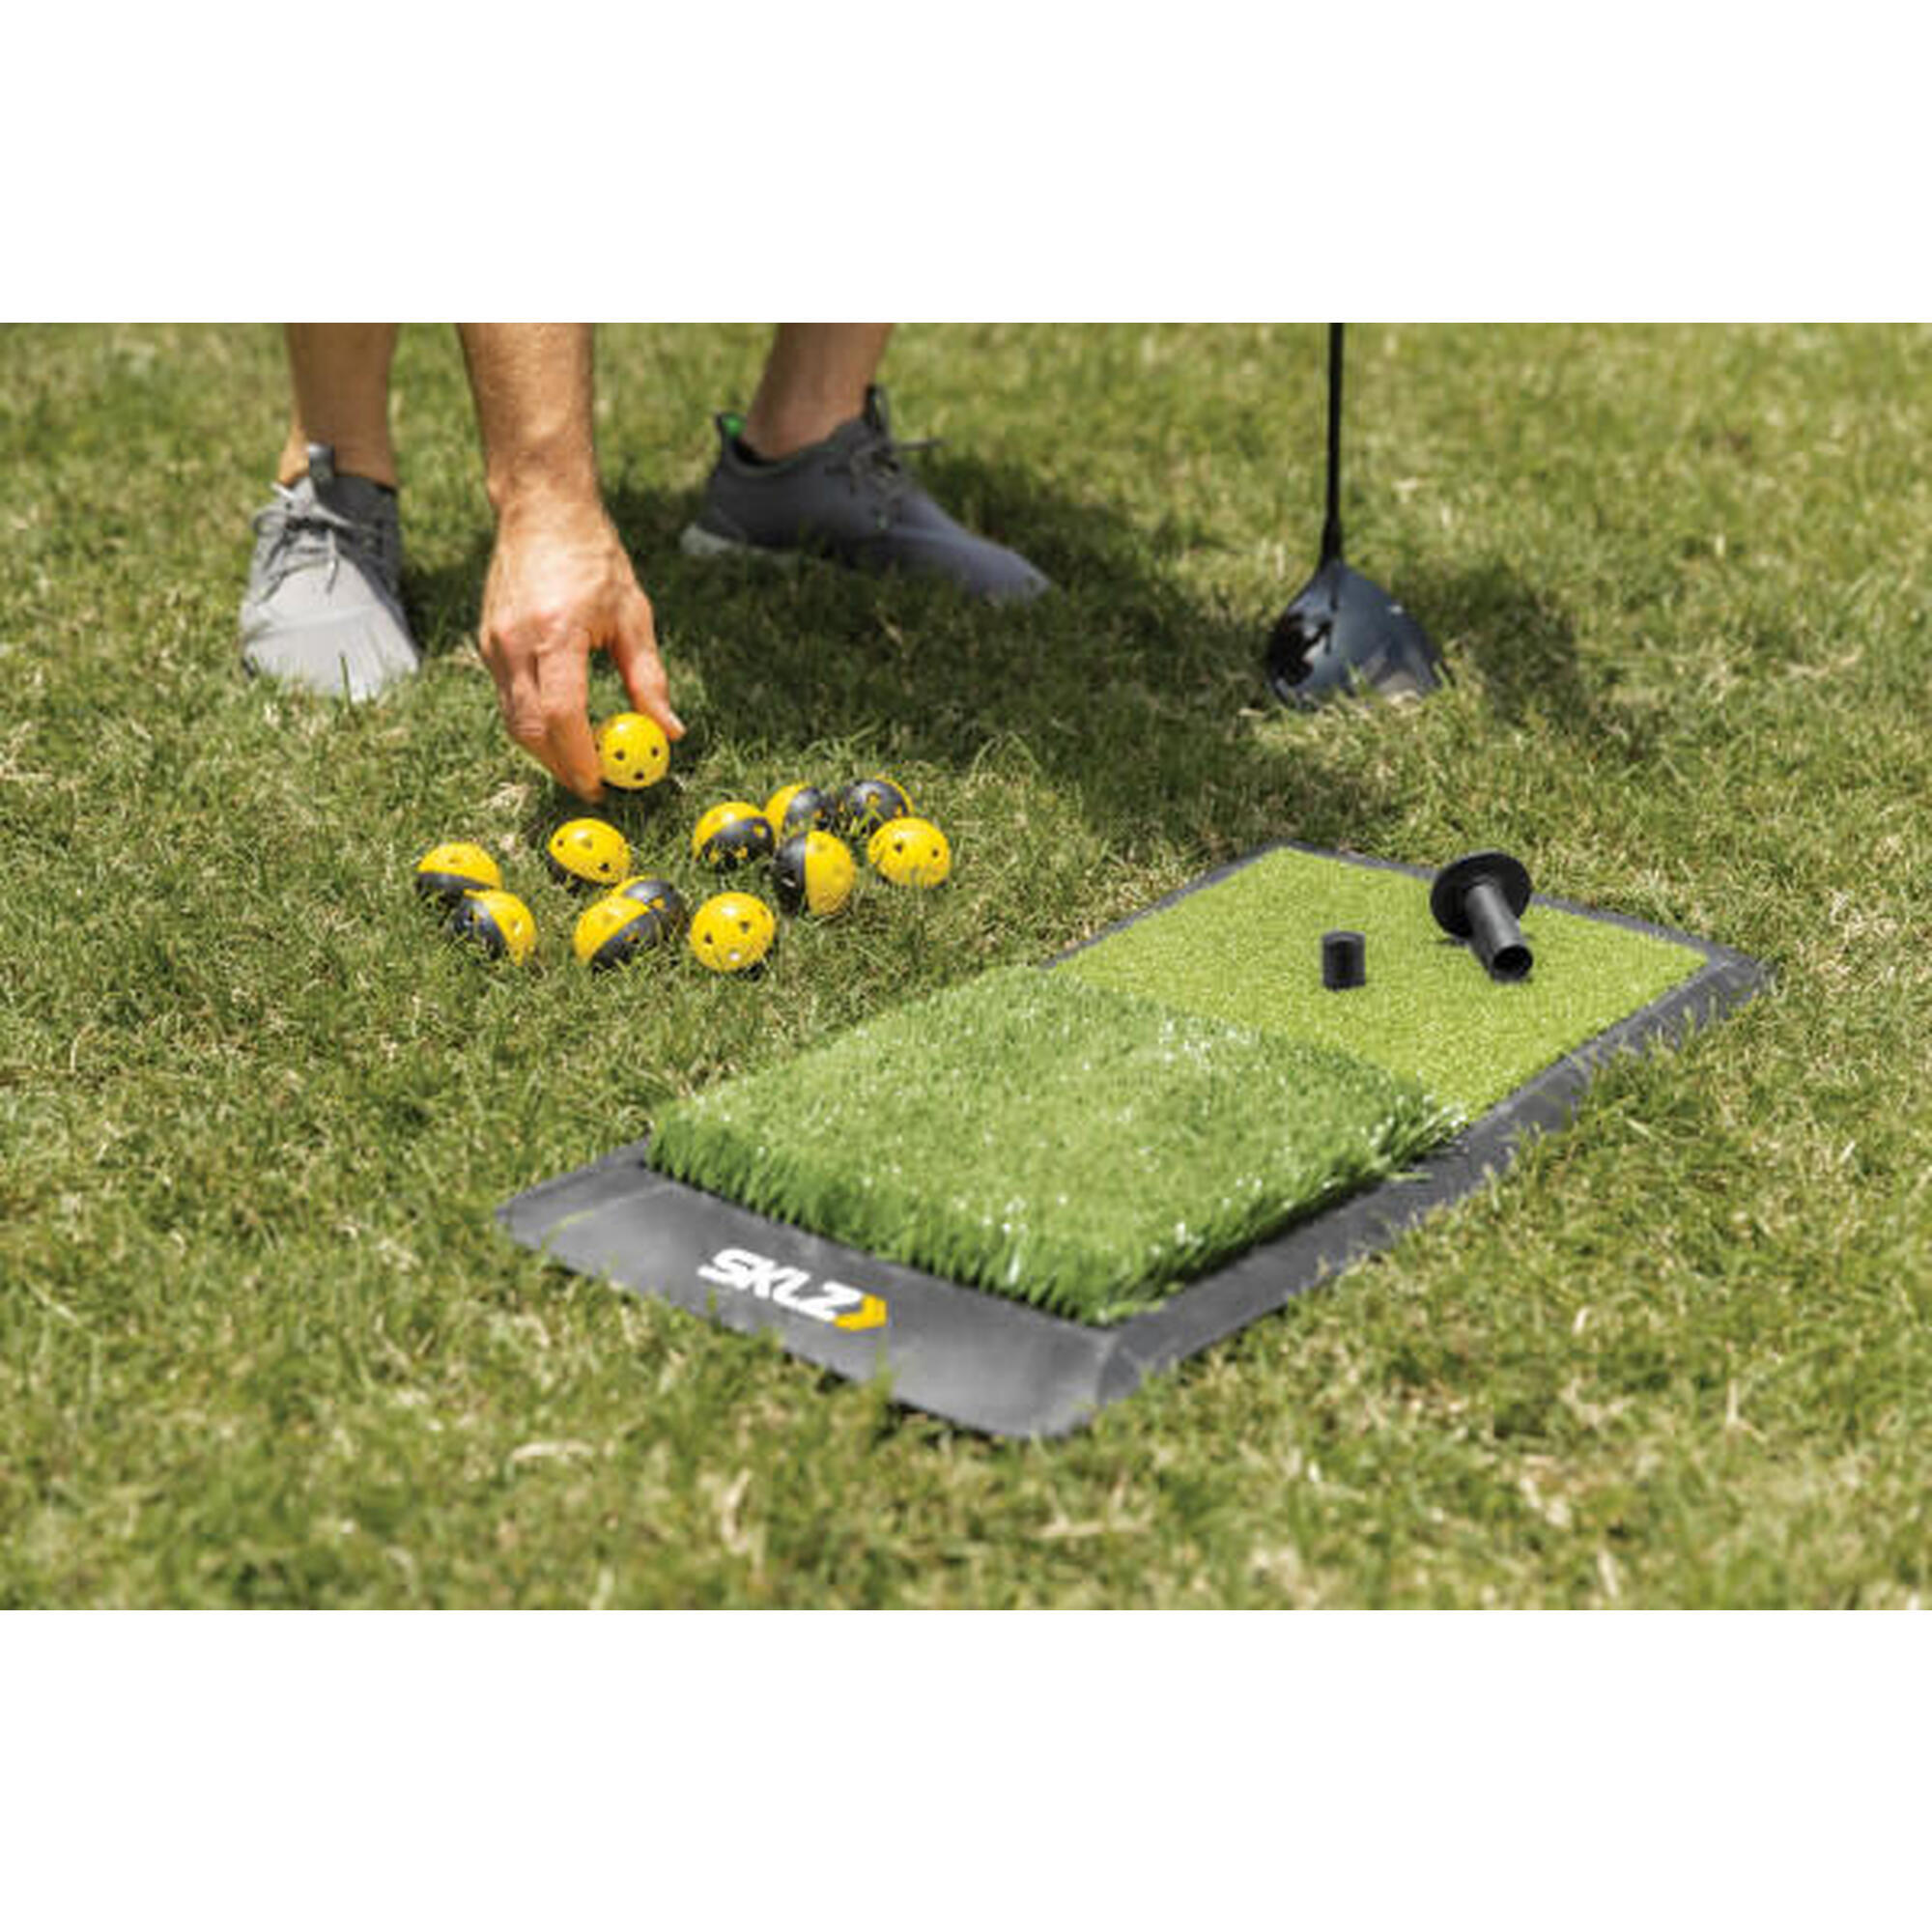 SKLZ - kit de pratique de golf à domicile